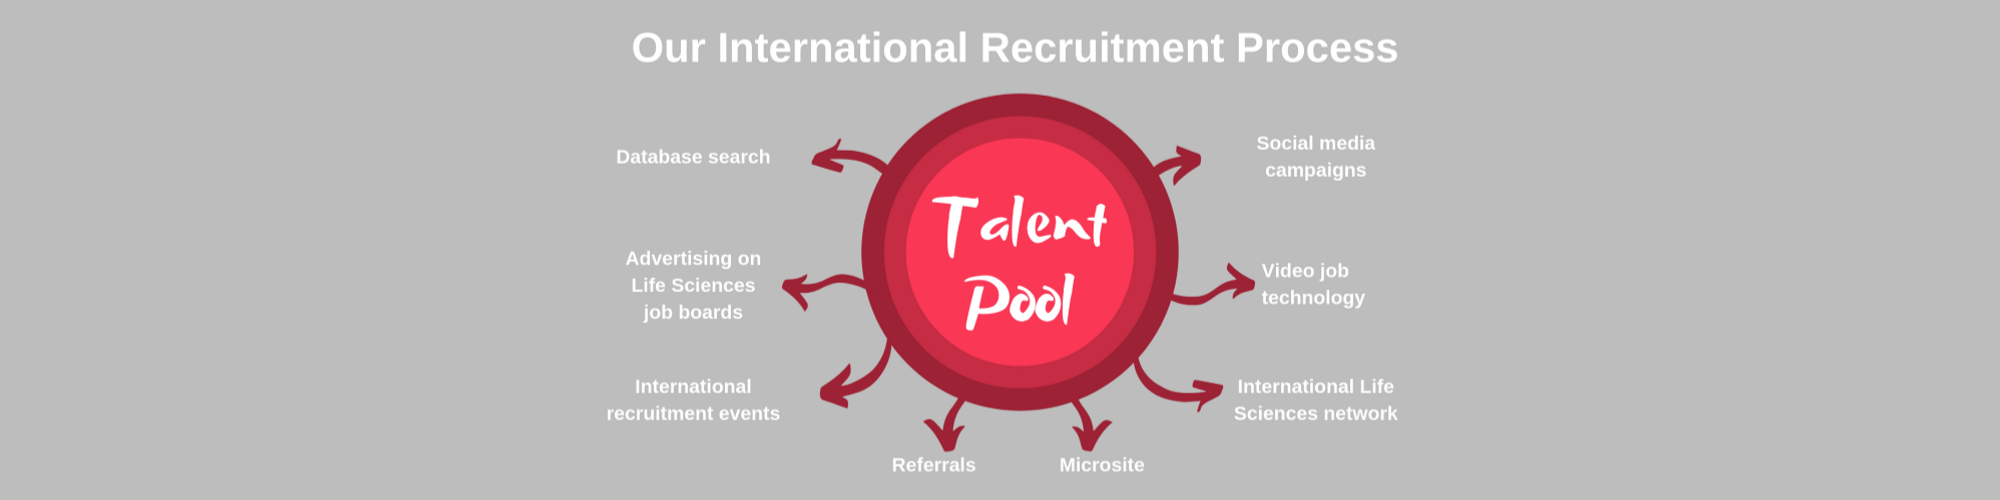 international recruitment process